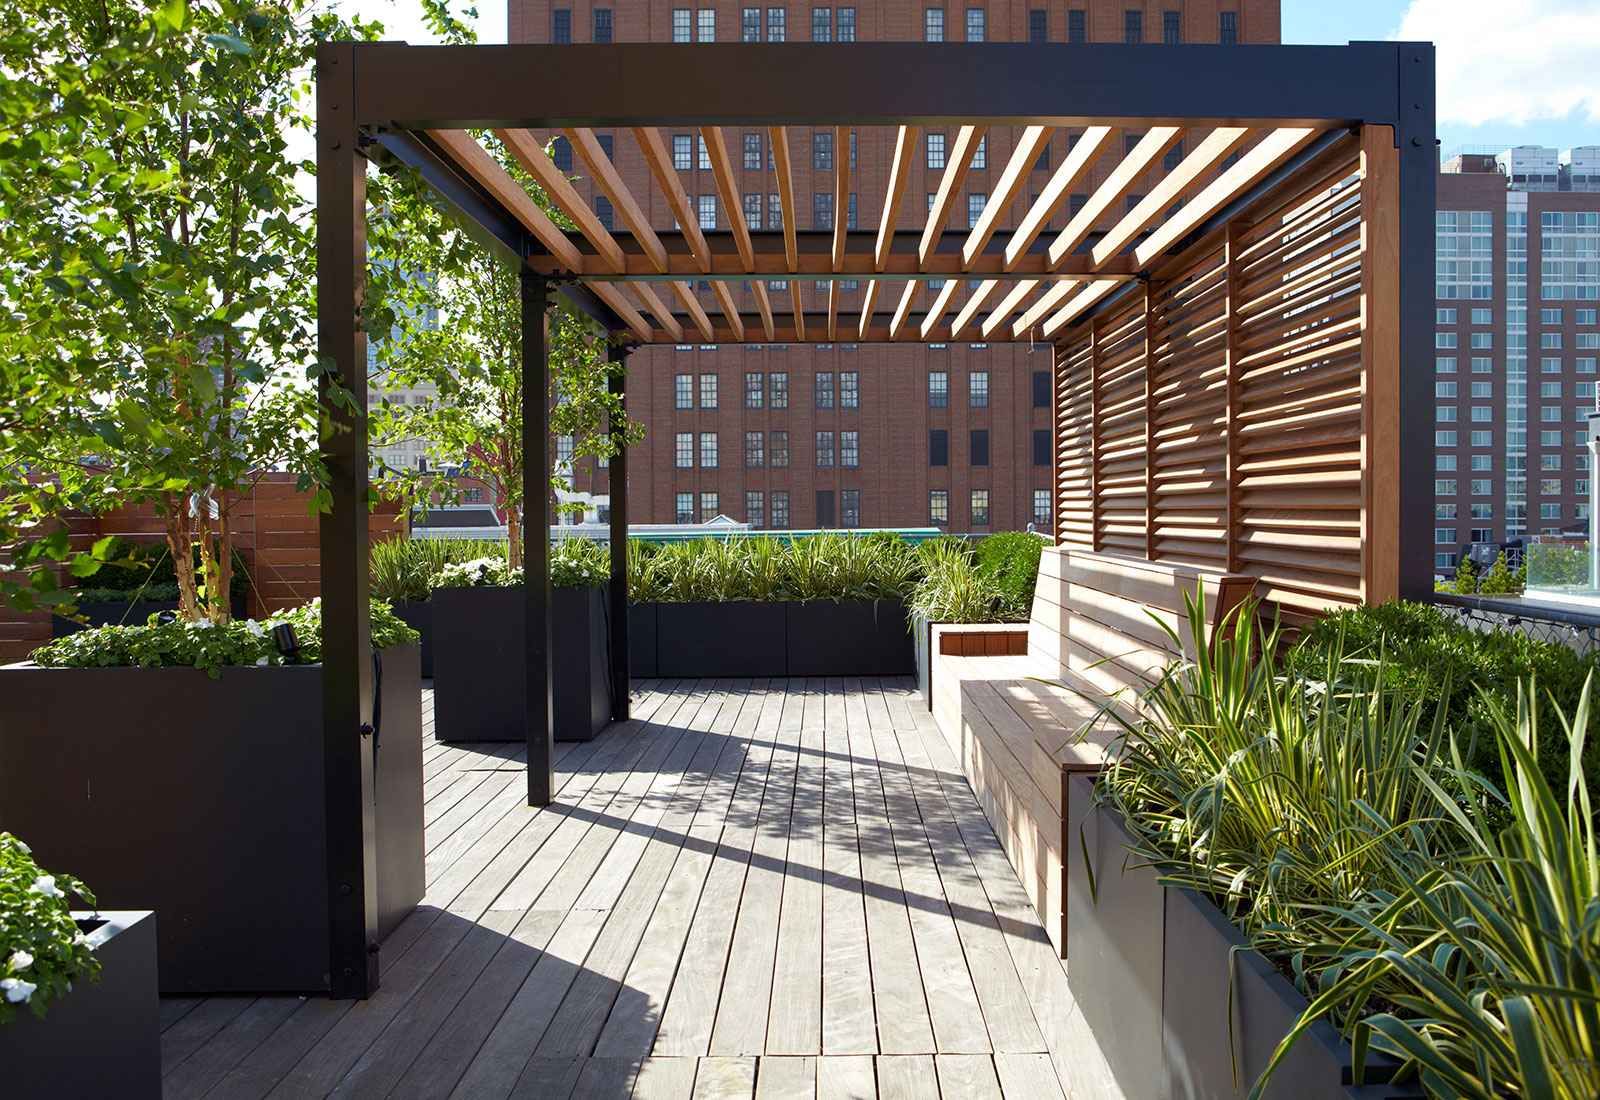 Terrassenbepflanzung Ideen Inspirierend 75 Best Outdoor Bar Images